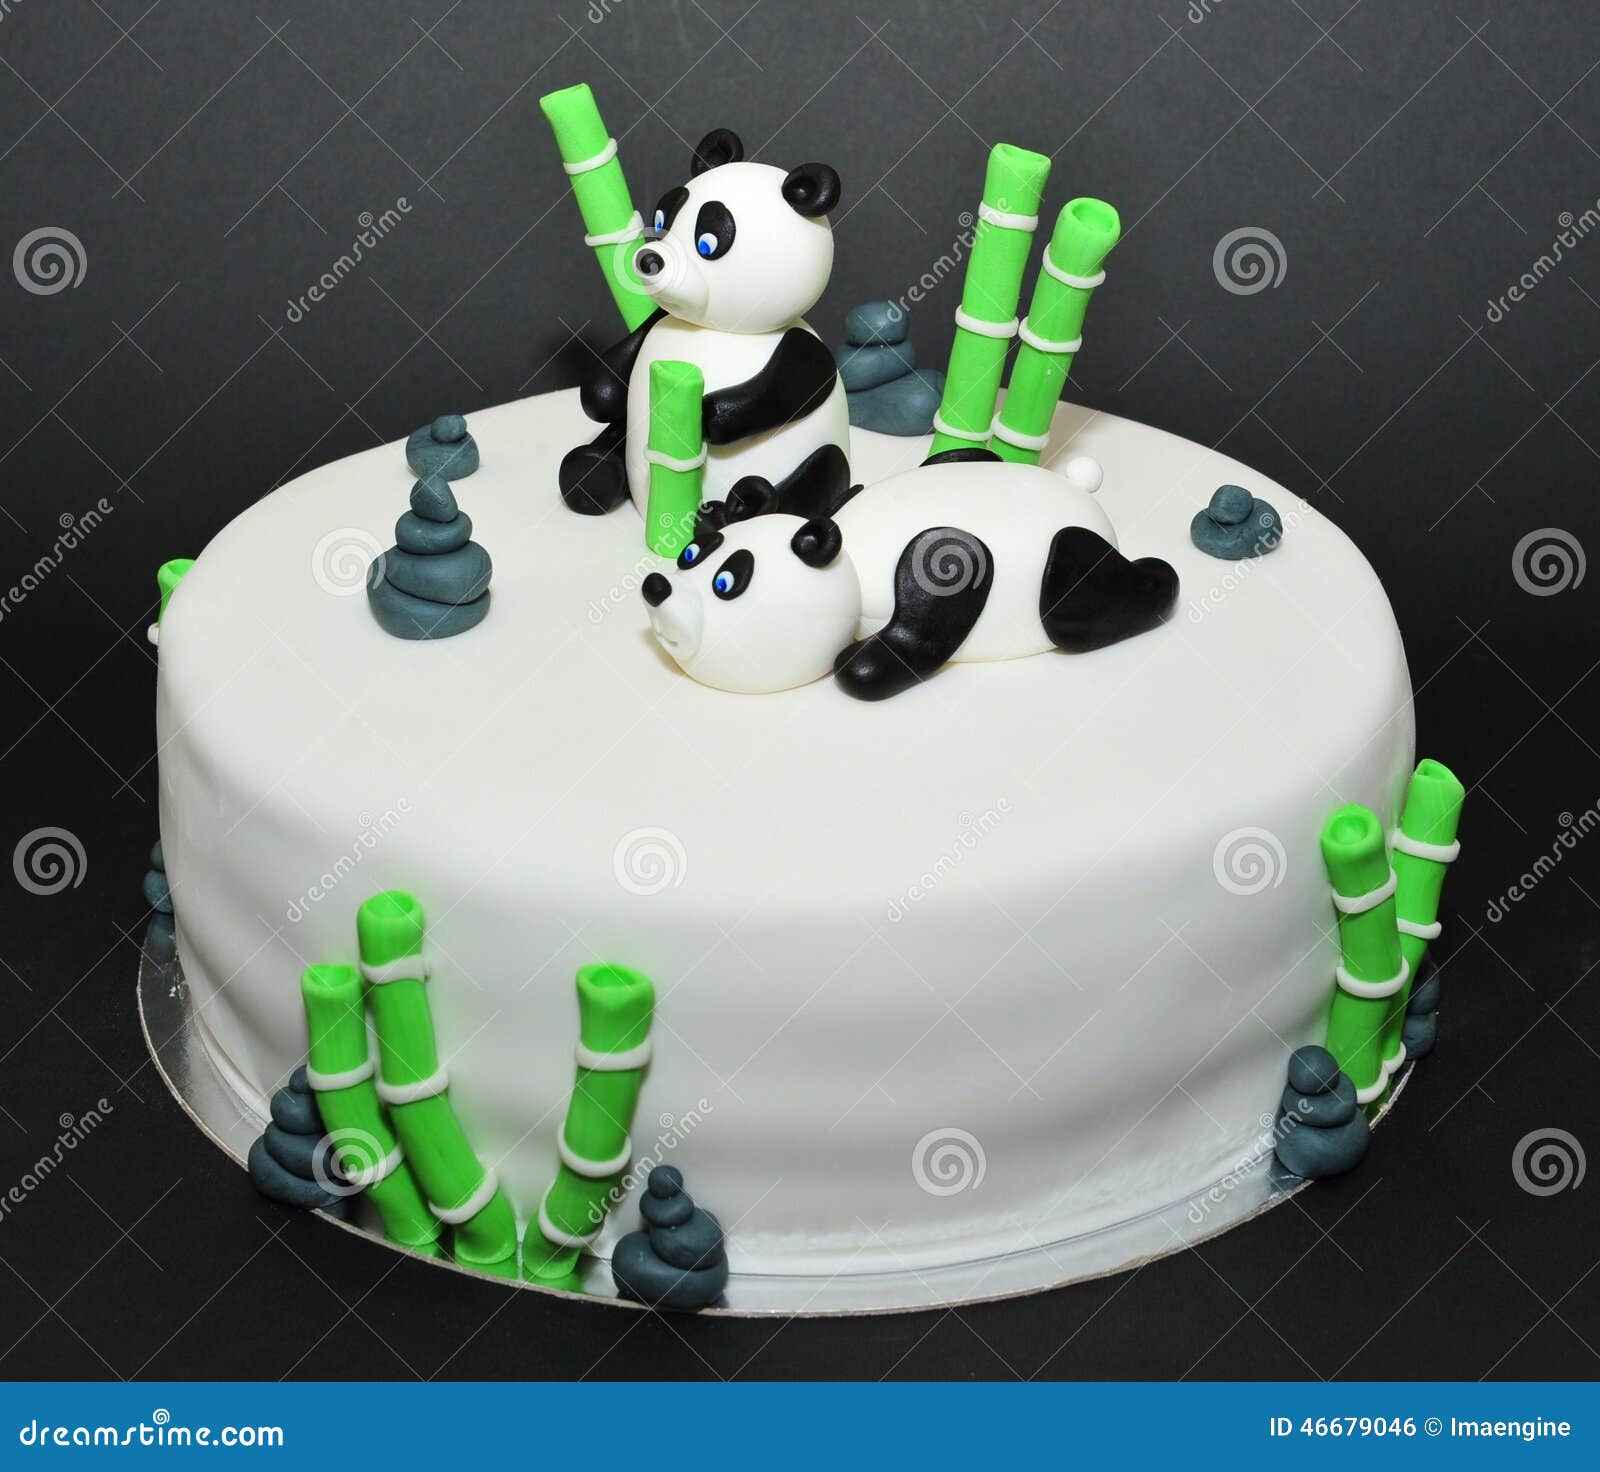 可爱熊猫蛋糕插牌 蛋糕插件 创意甜品台装饰熊猫生日派对装饰-阿里巴巴